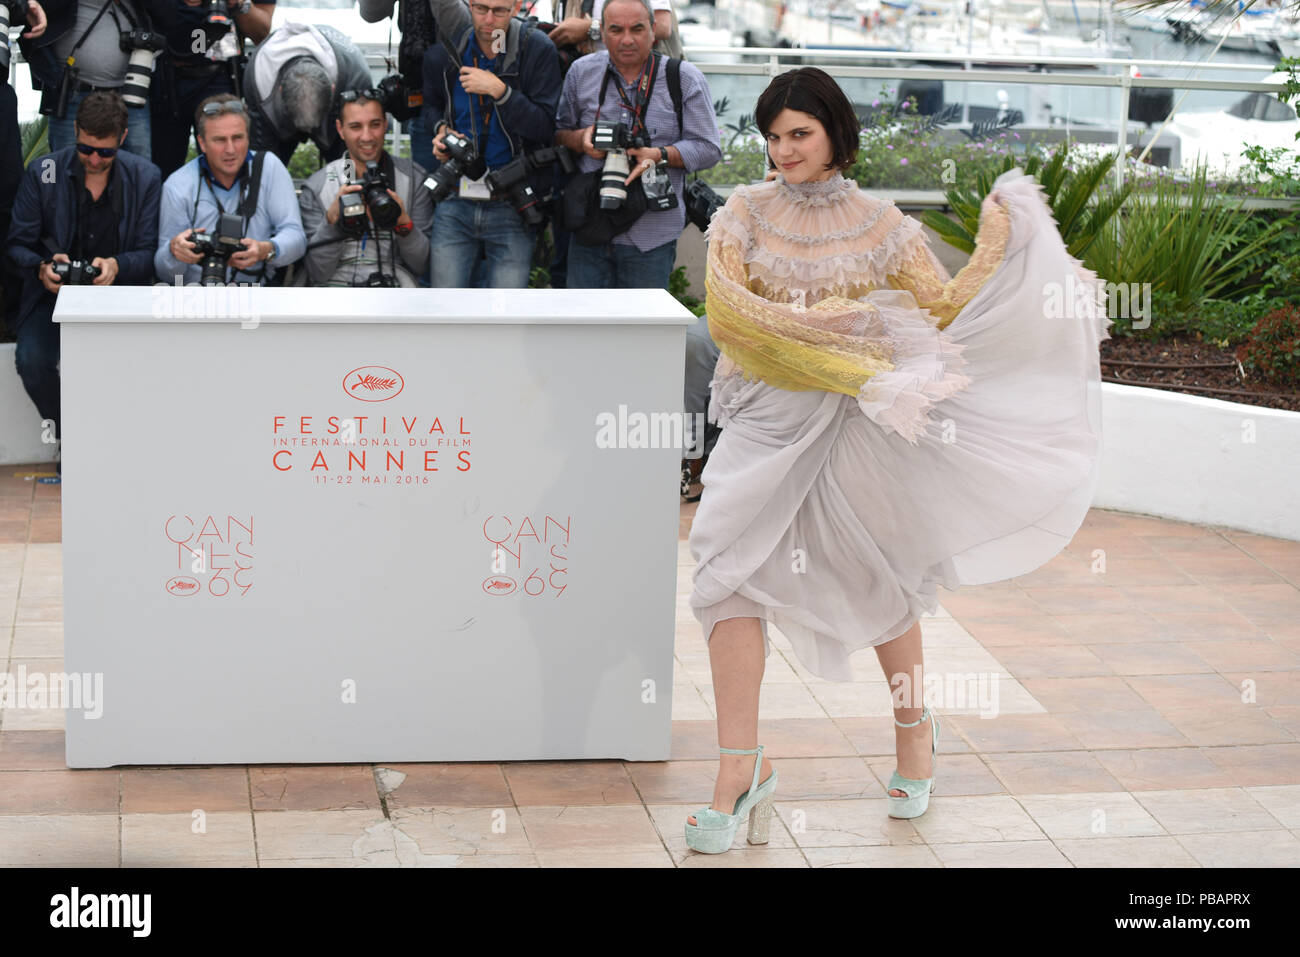 Mai 13, 2016 - Cannes, Frankreich: Soko besucht die 'La Danseuse" fotoshooting während des 69. Filmfestival in Cannes. Soko lors du 69eme Festival de Cannes. *** Frankreich/KEINE VERKÄUFE IN DEN FRANZÖSISCHEN MEDIEN *** Stockfoto